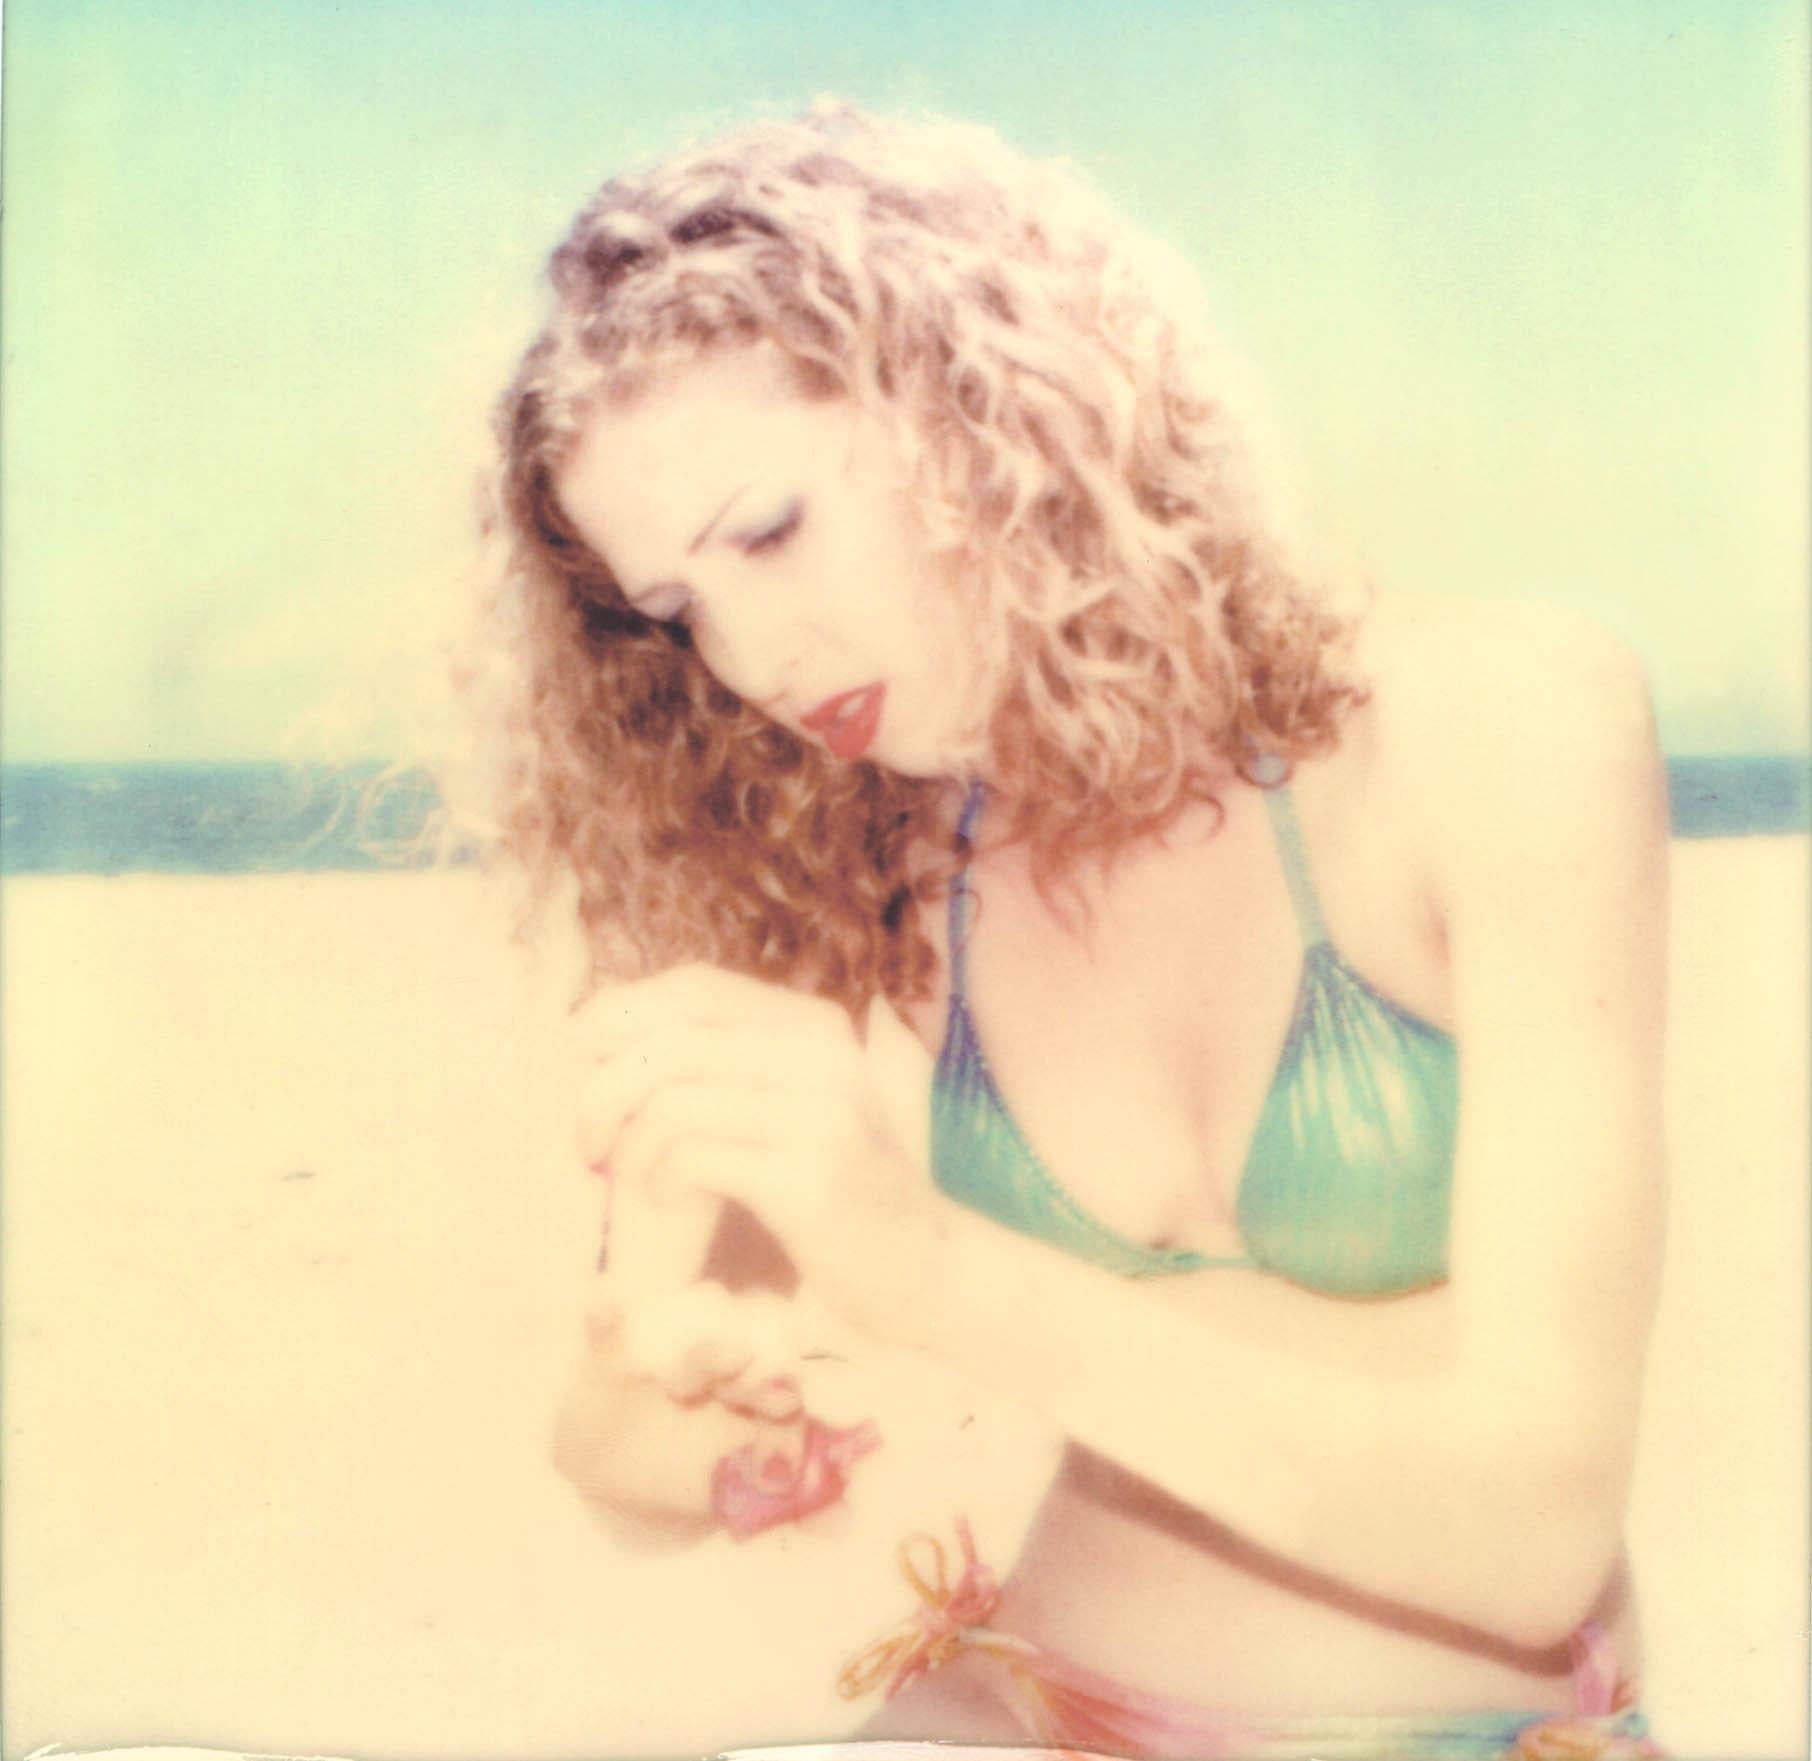 Stefanie Schneider Portrait Photograph - Kelly (Beachshoot) - analog, Polaroid, vintage hand-print, Contemporary, Women